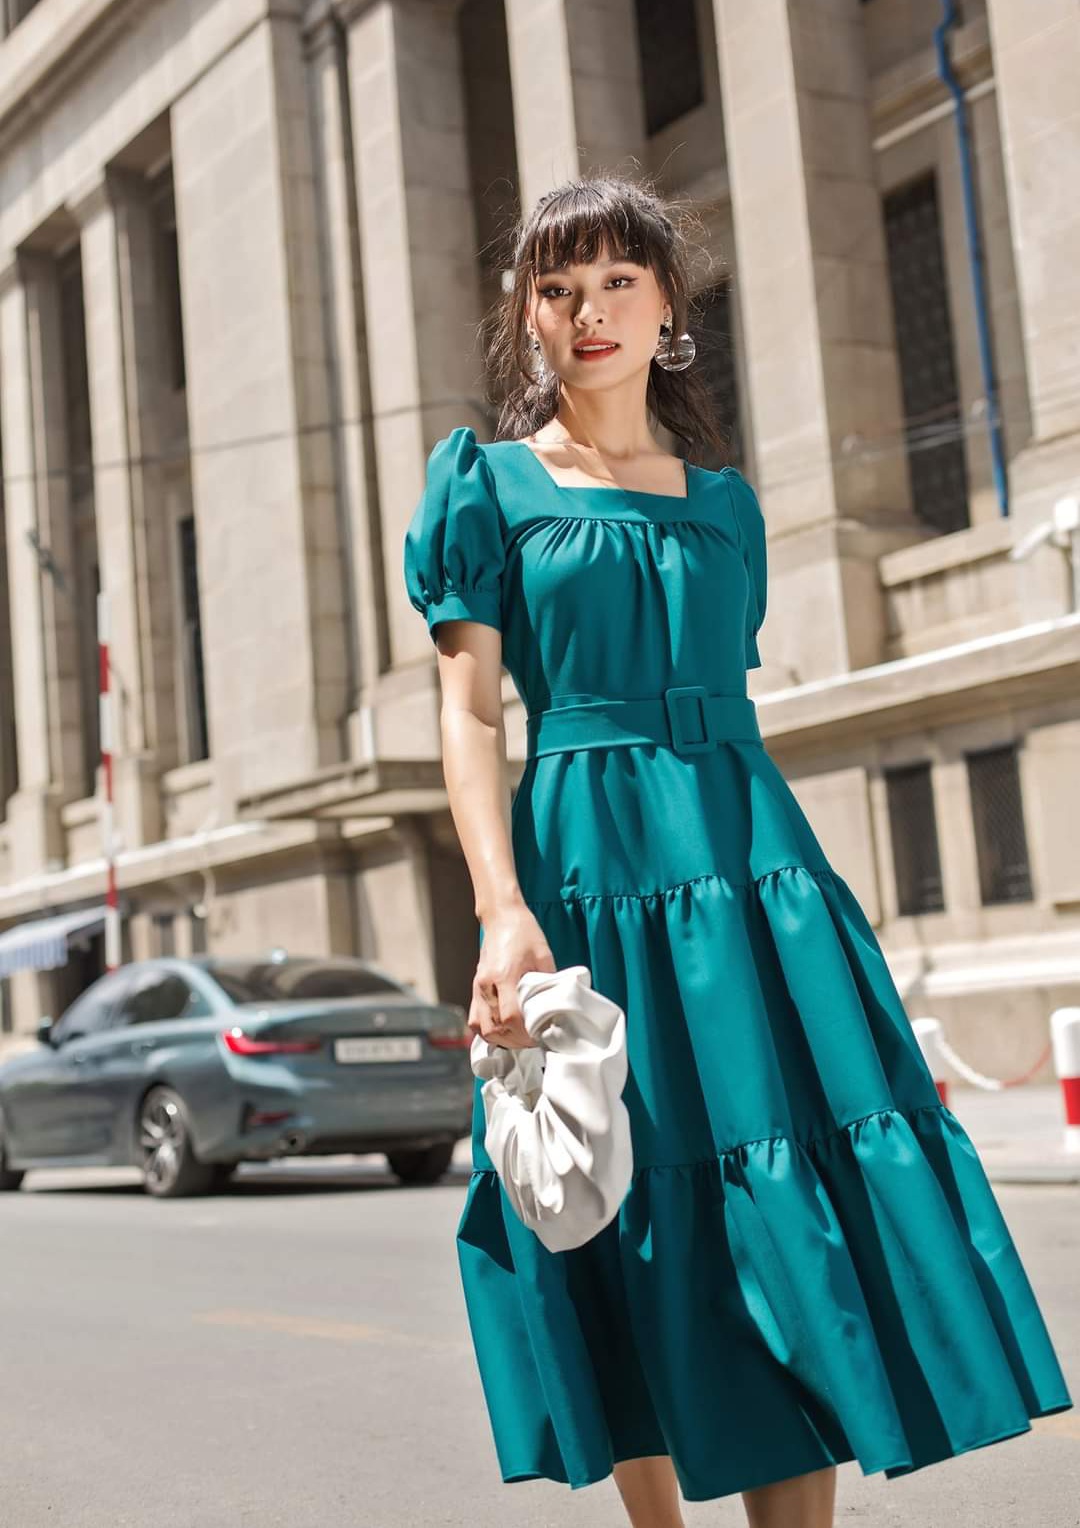 Phái đẹp mê mẩn với váy áo màu xanh cổ vịt vừa tôn da lại rất hiện đại